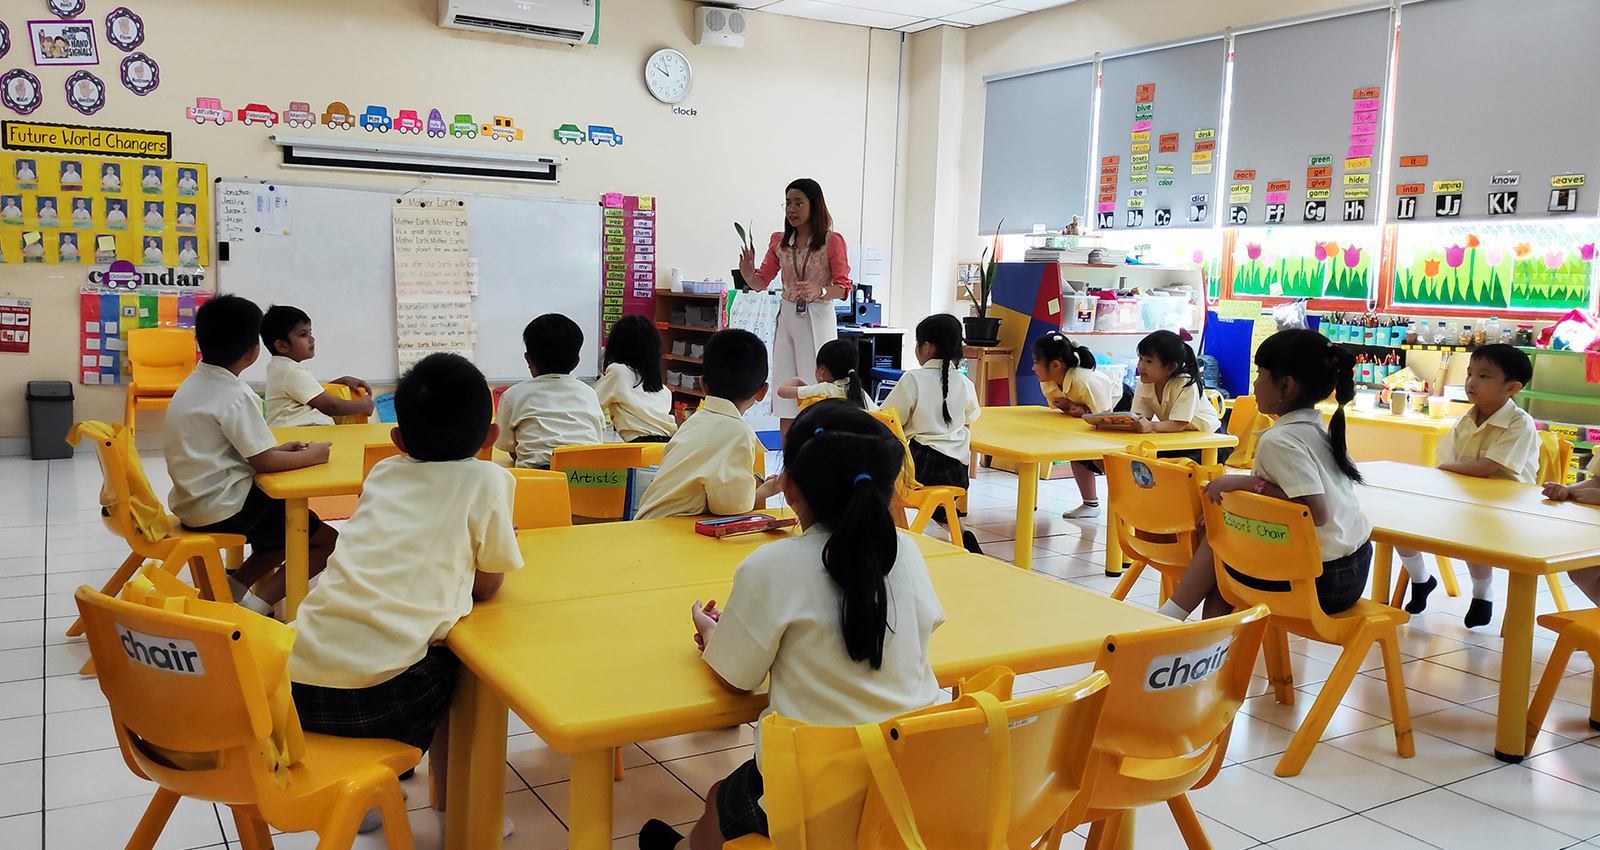 Primary Classroom